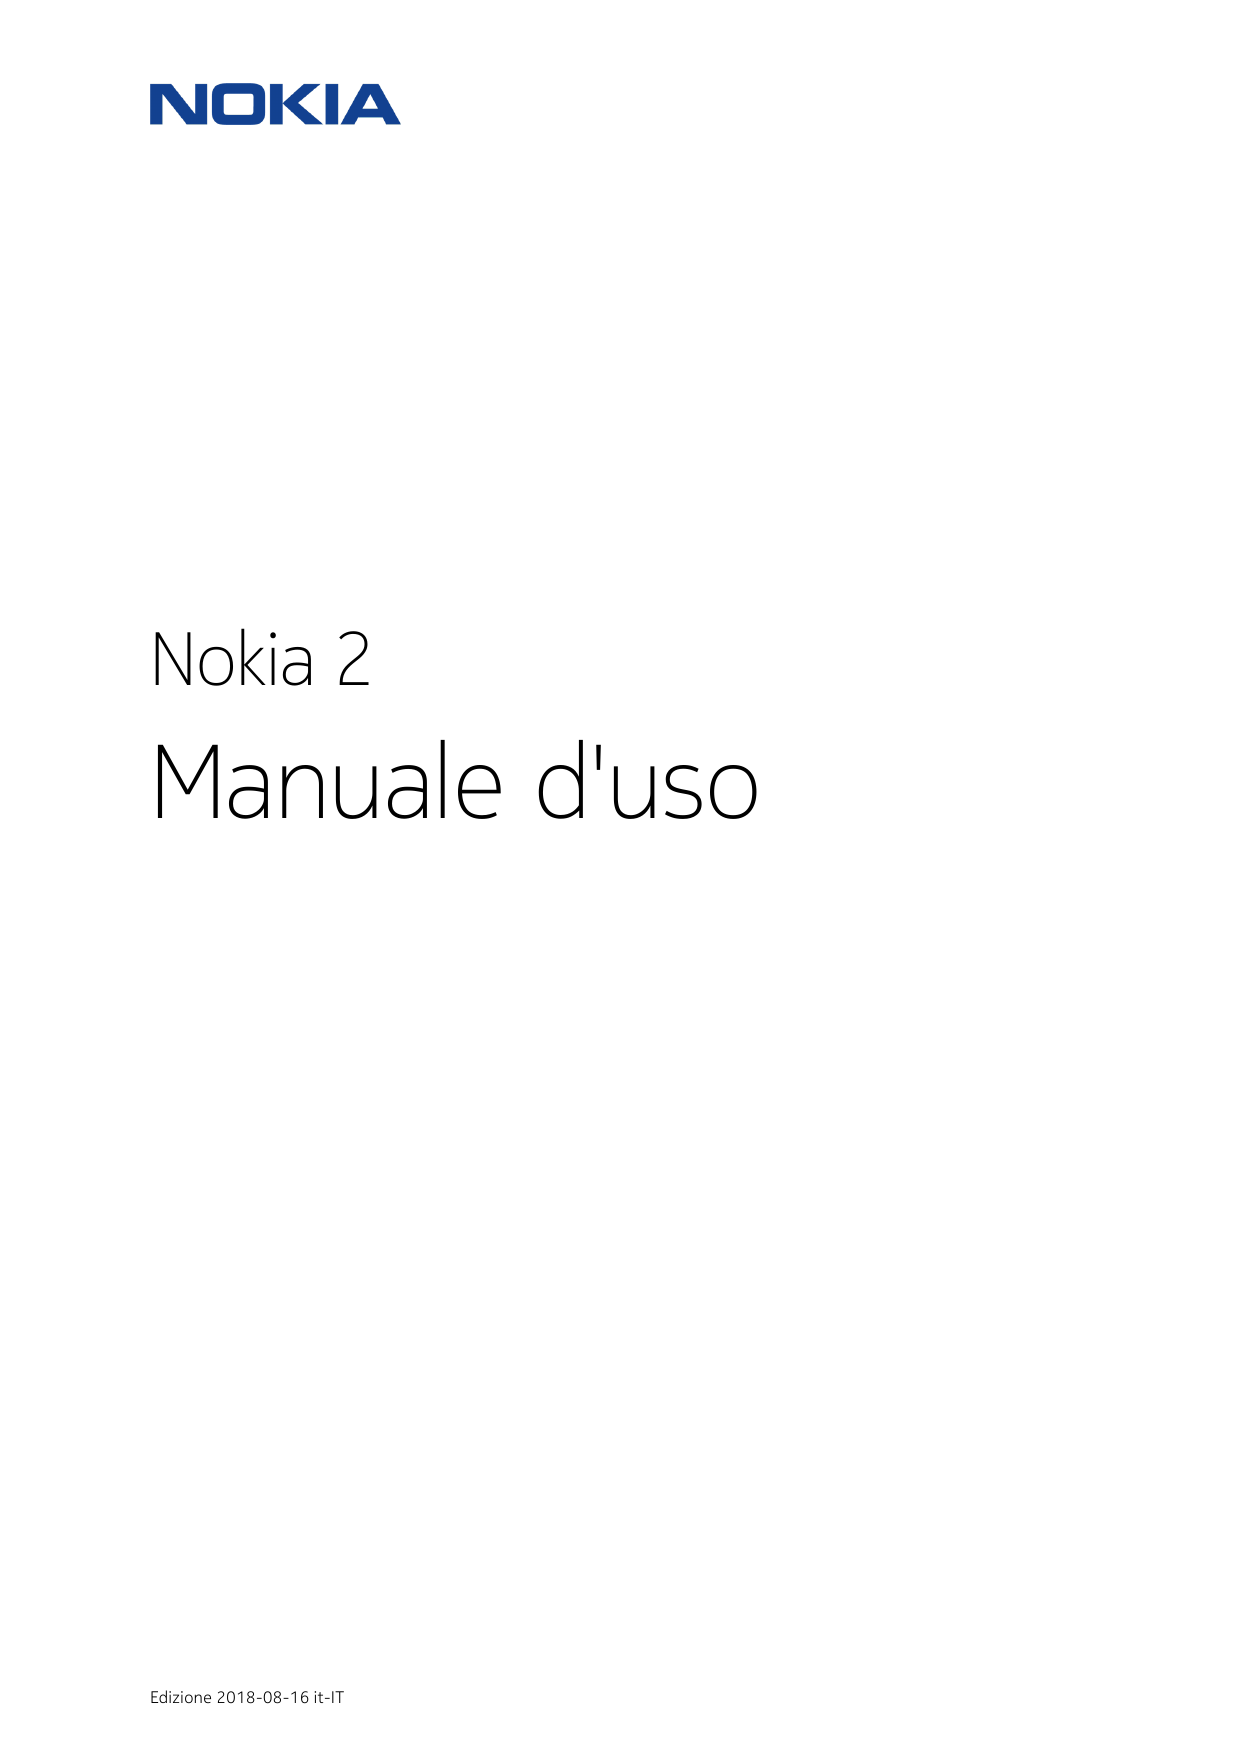 Nokia 2Manuale d'usoEdizione 2018-08-16 it-IT